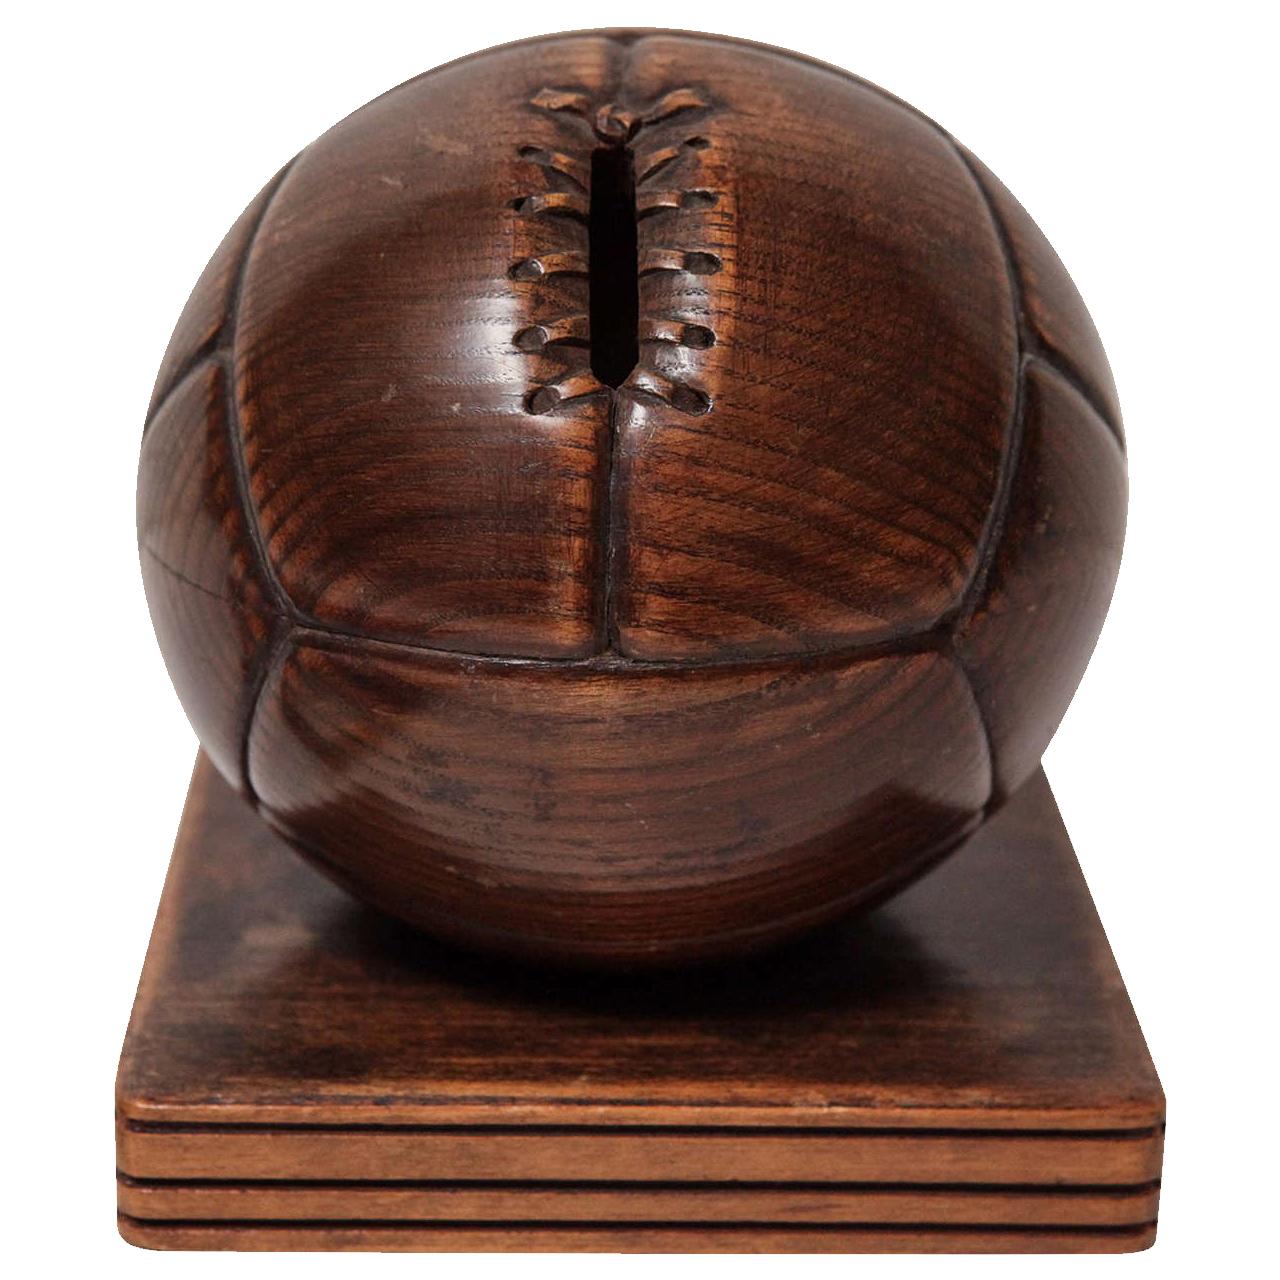 Tirelire à billes de football en bois sculptée à la main en forme de boule